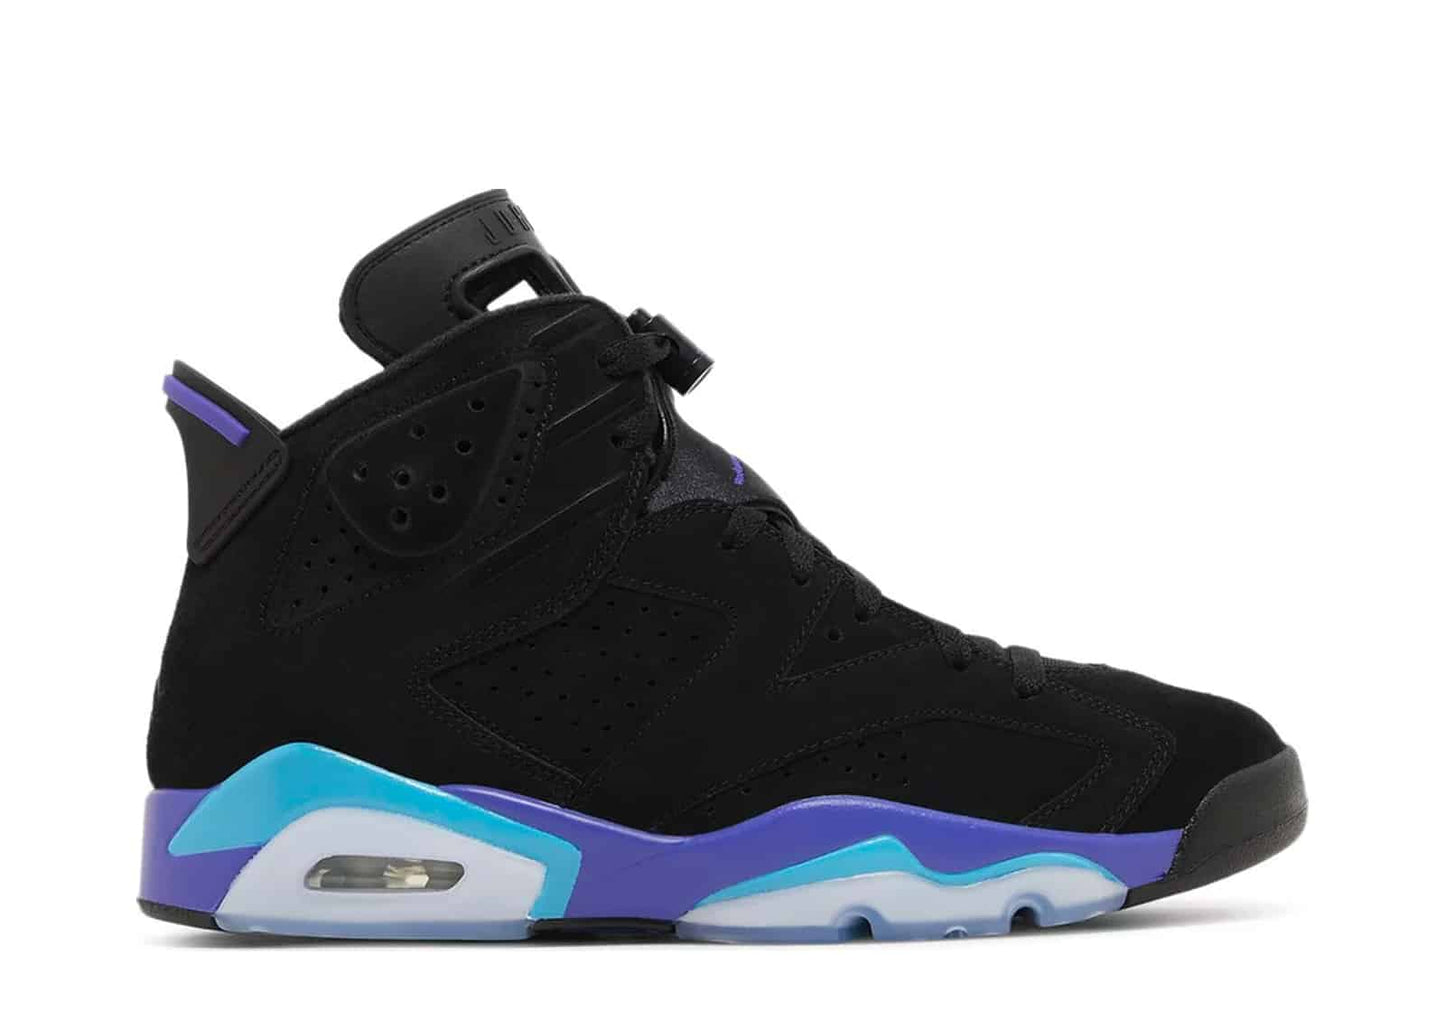 Air Jordan 6 Retro "Aqua" sneakers (Men's)